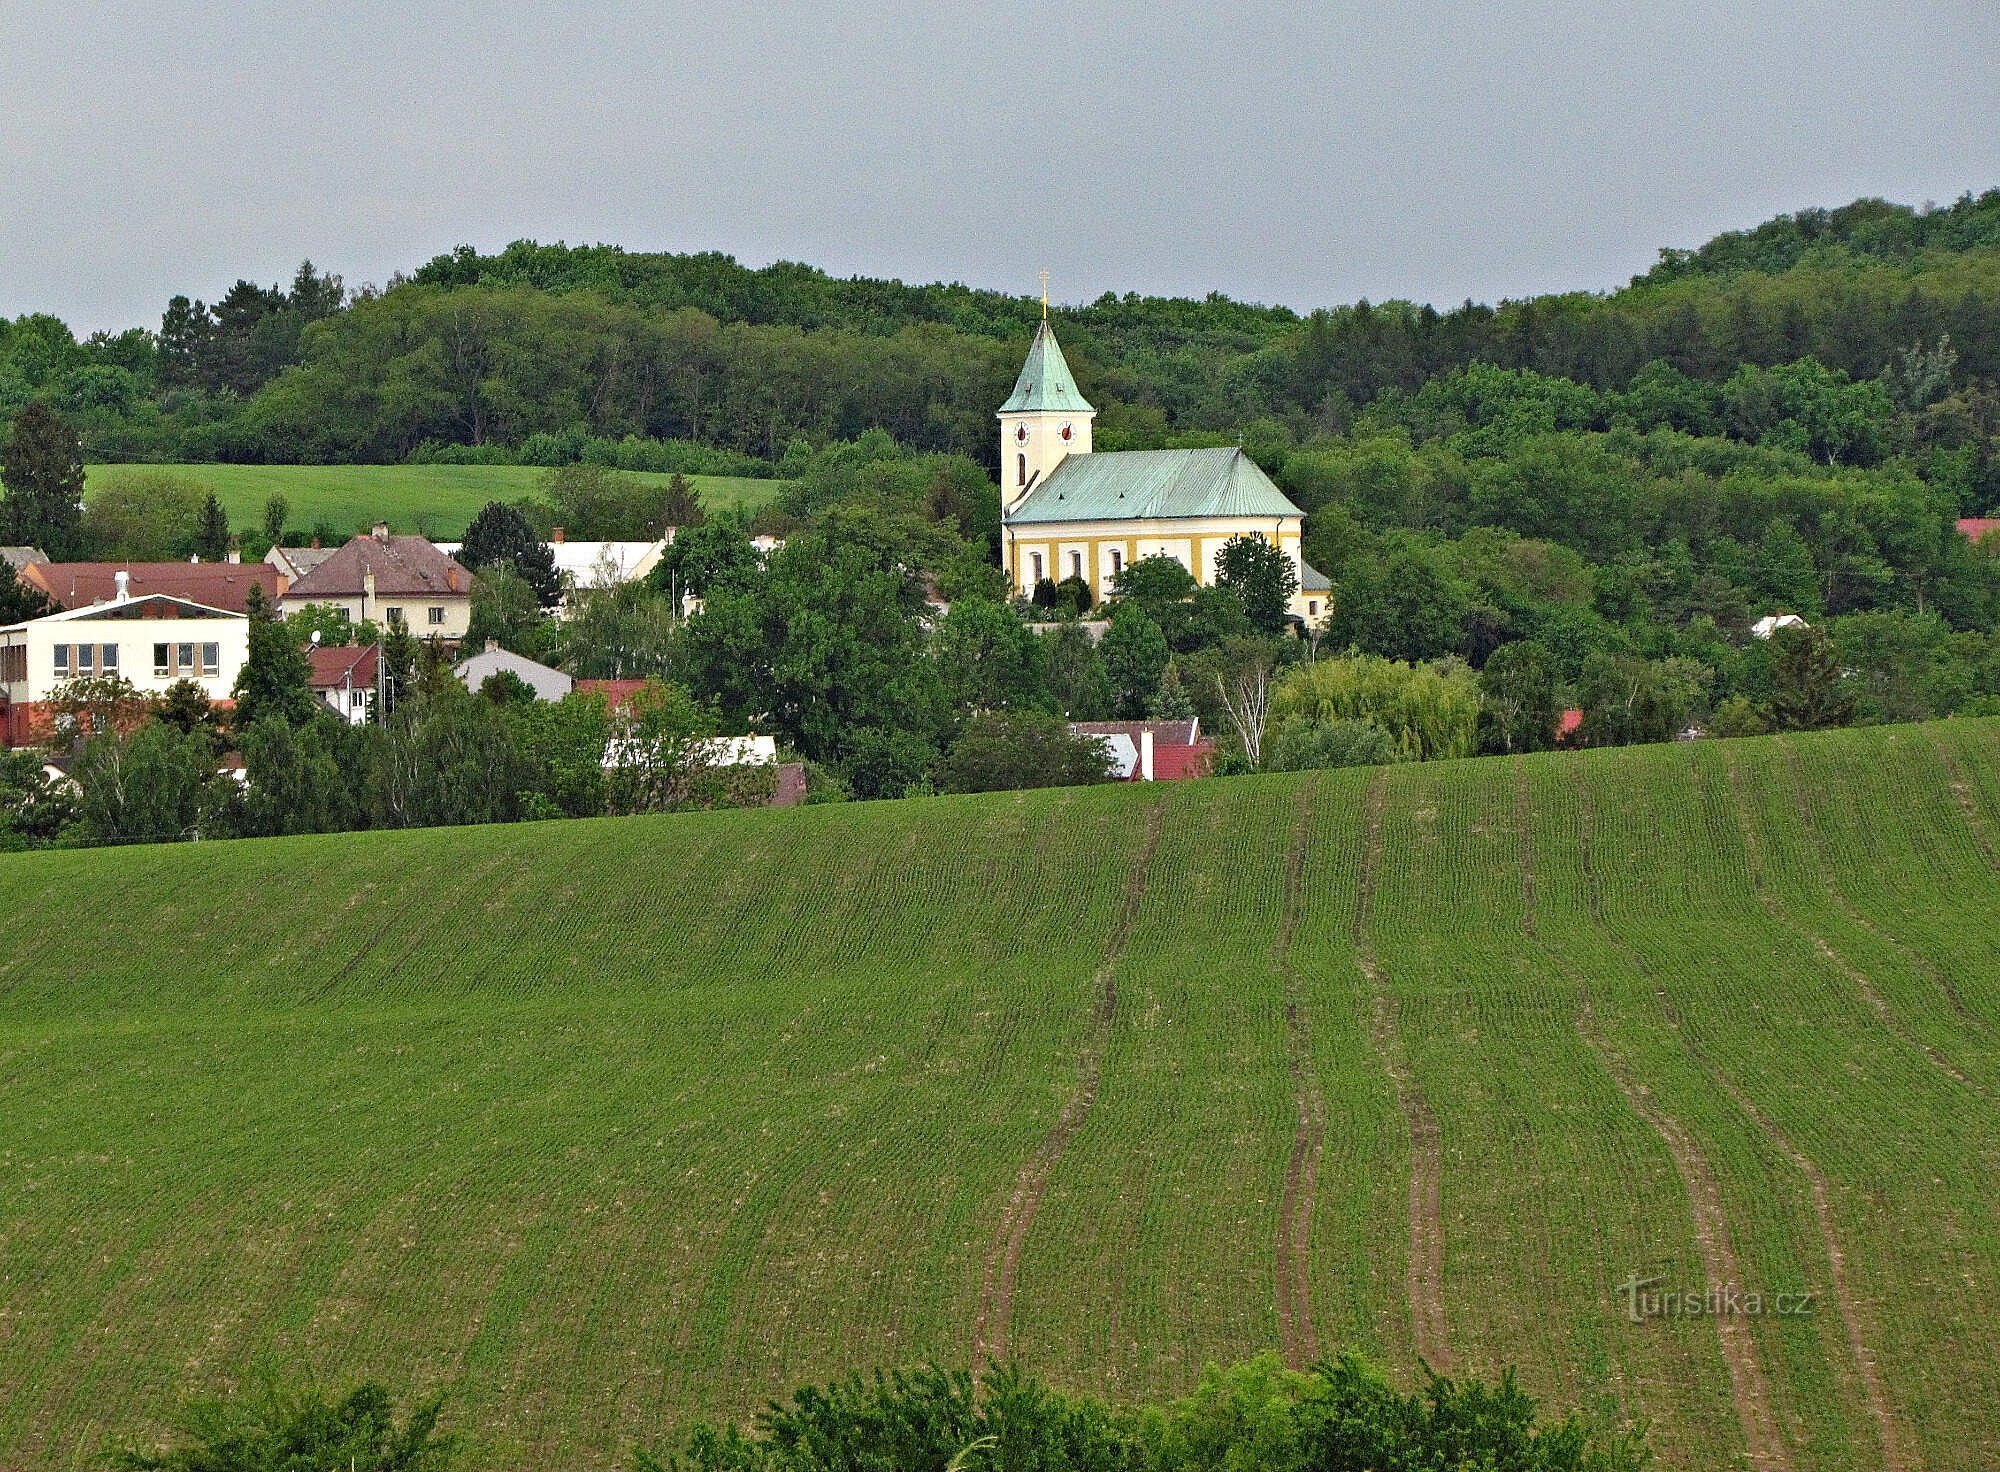 Kostelec lângă Holešov - biserica Sf. Petru și Pavel